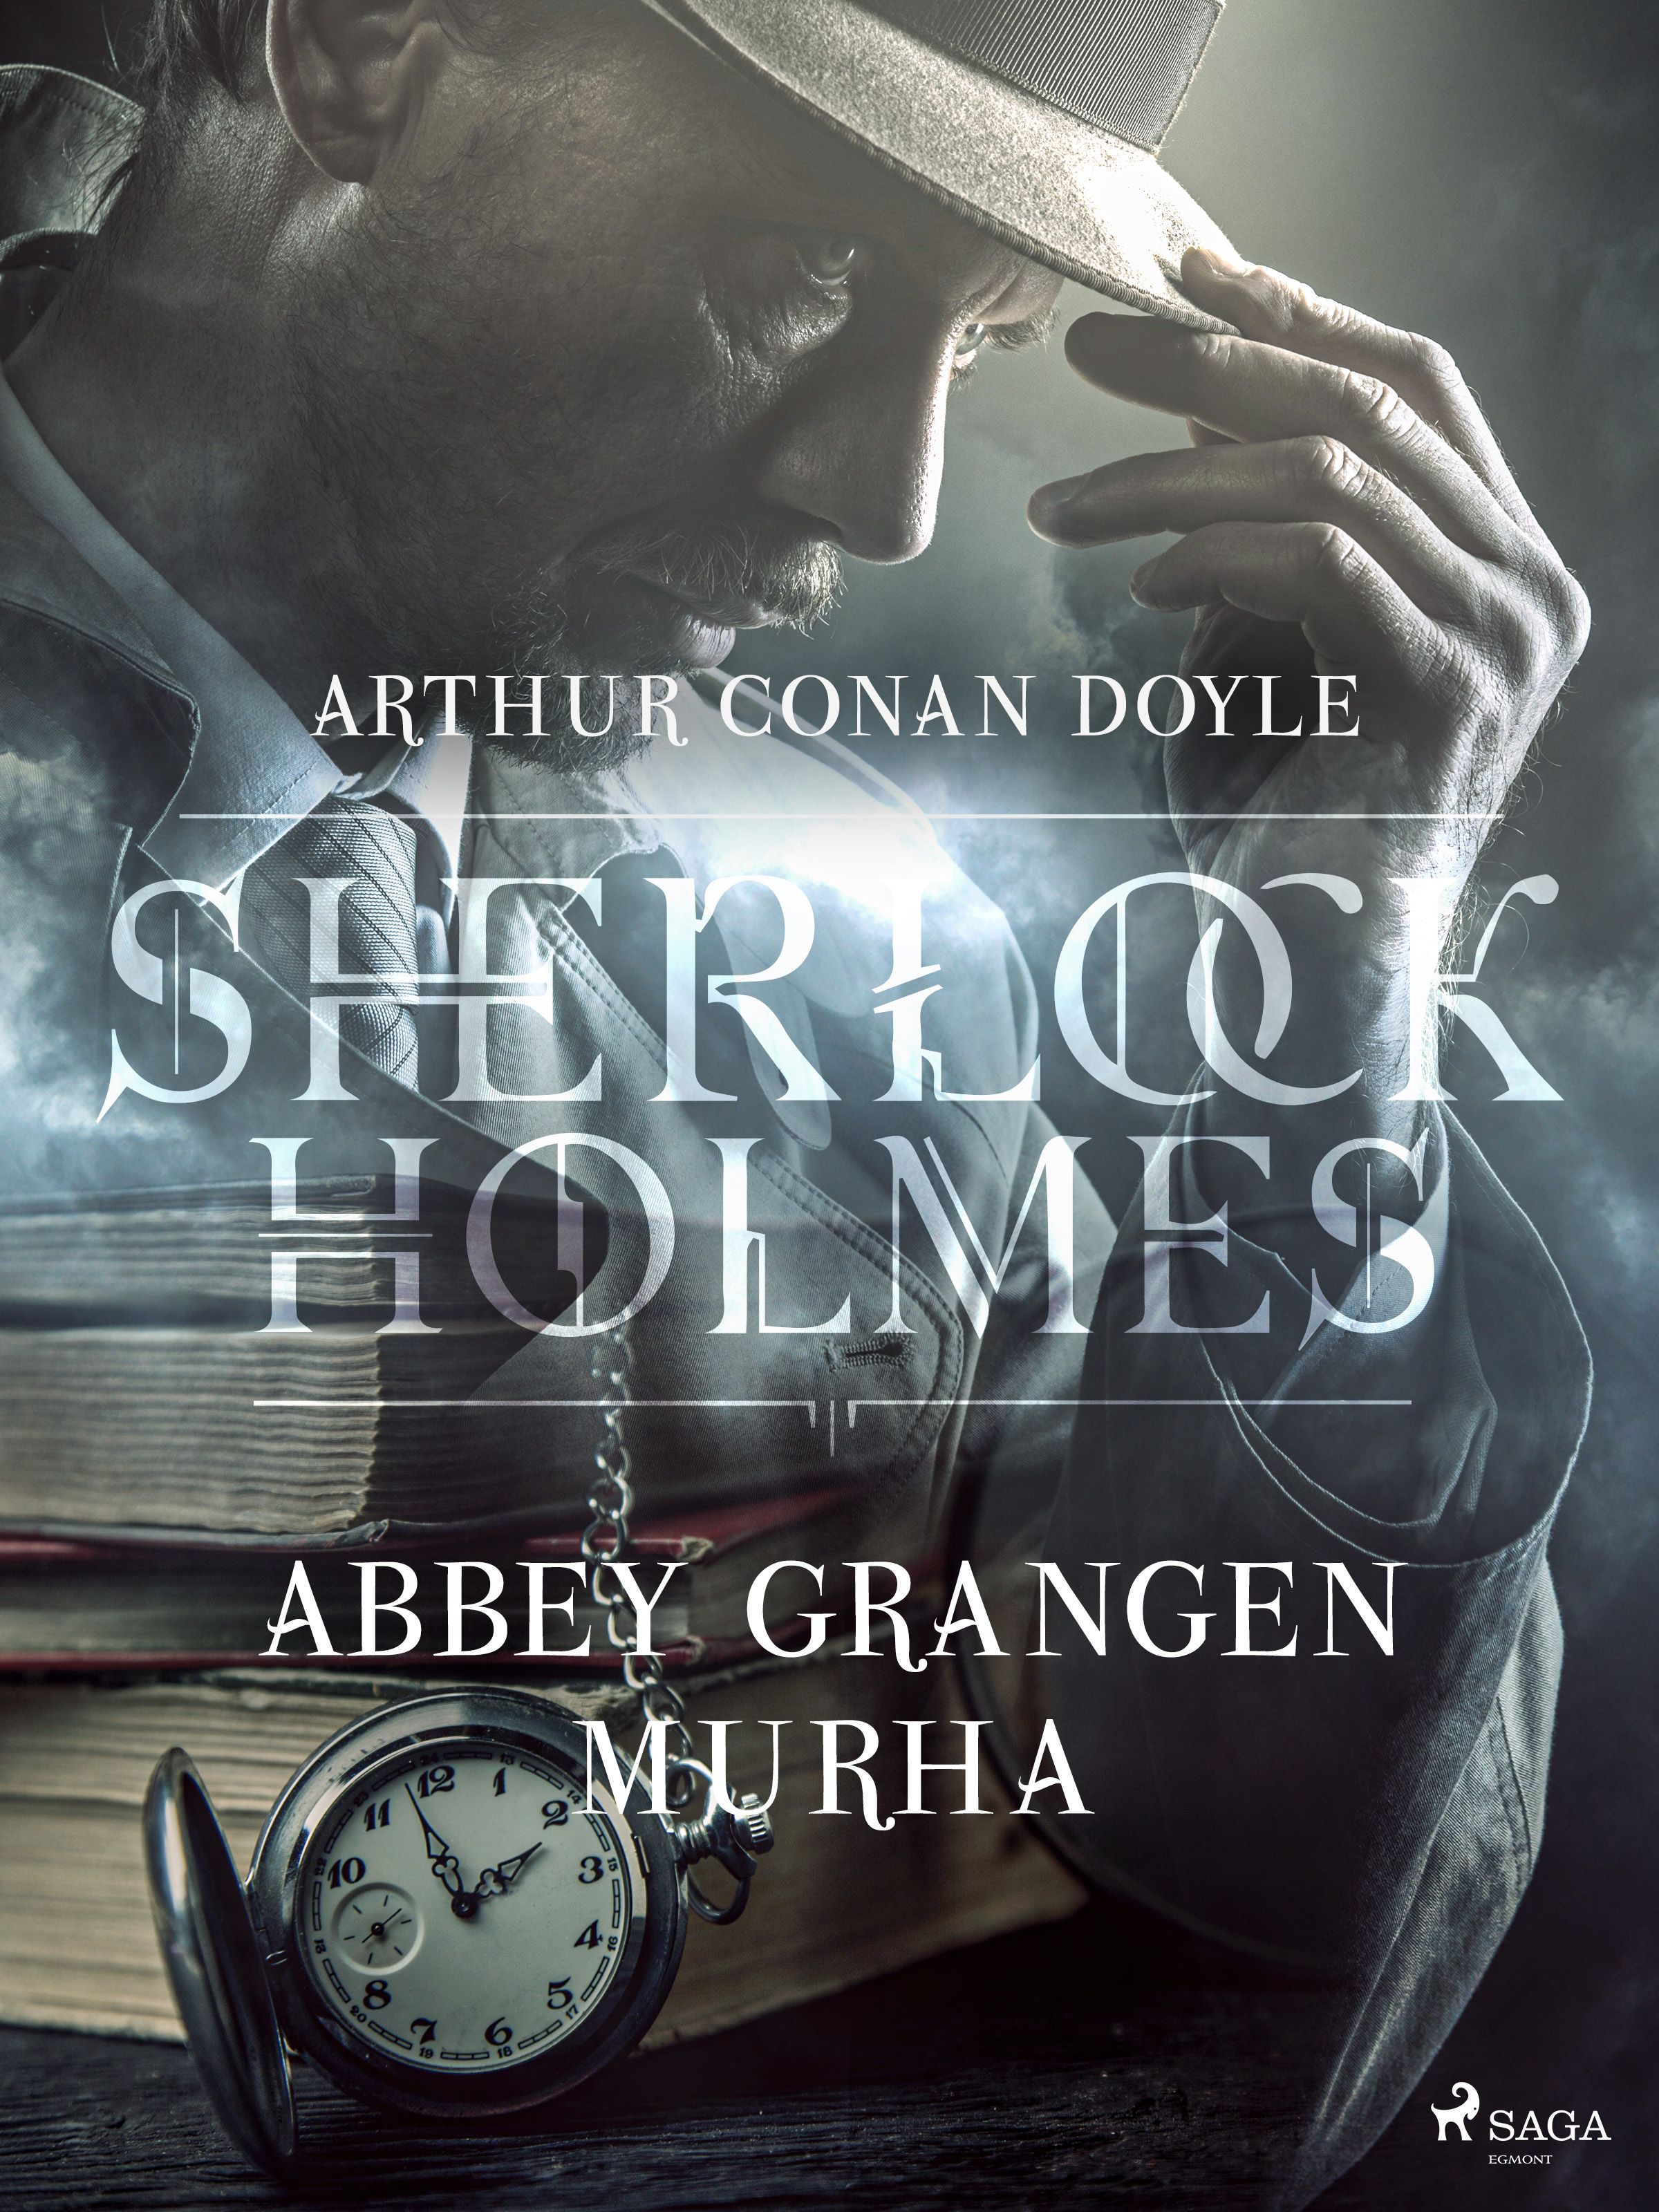 Abbey Grangen murha, e-bok av Arthur Conan Doyle